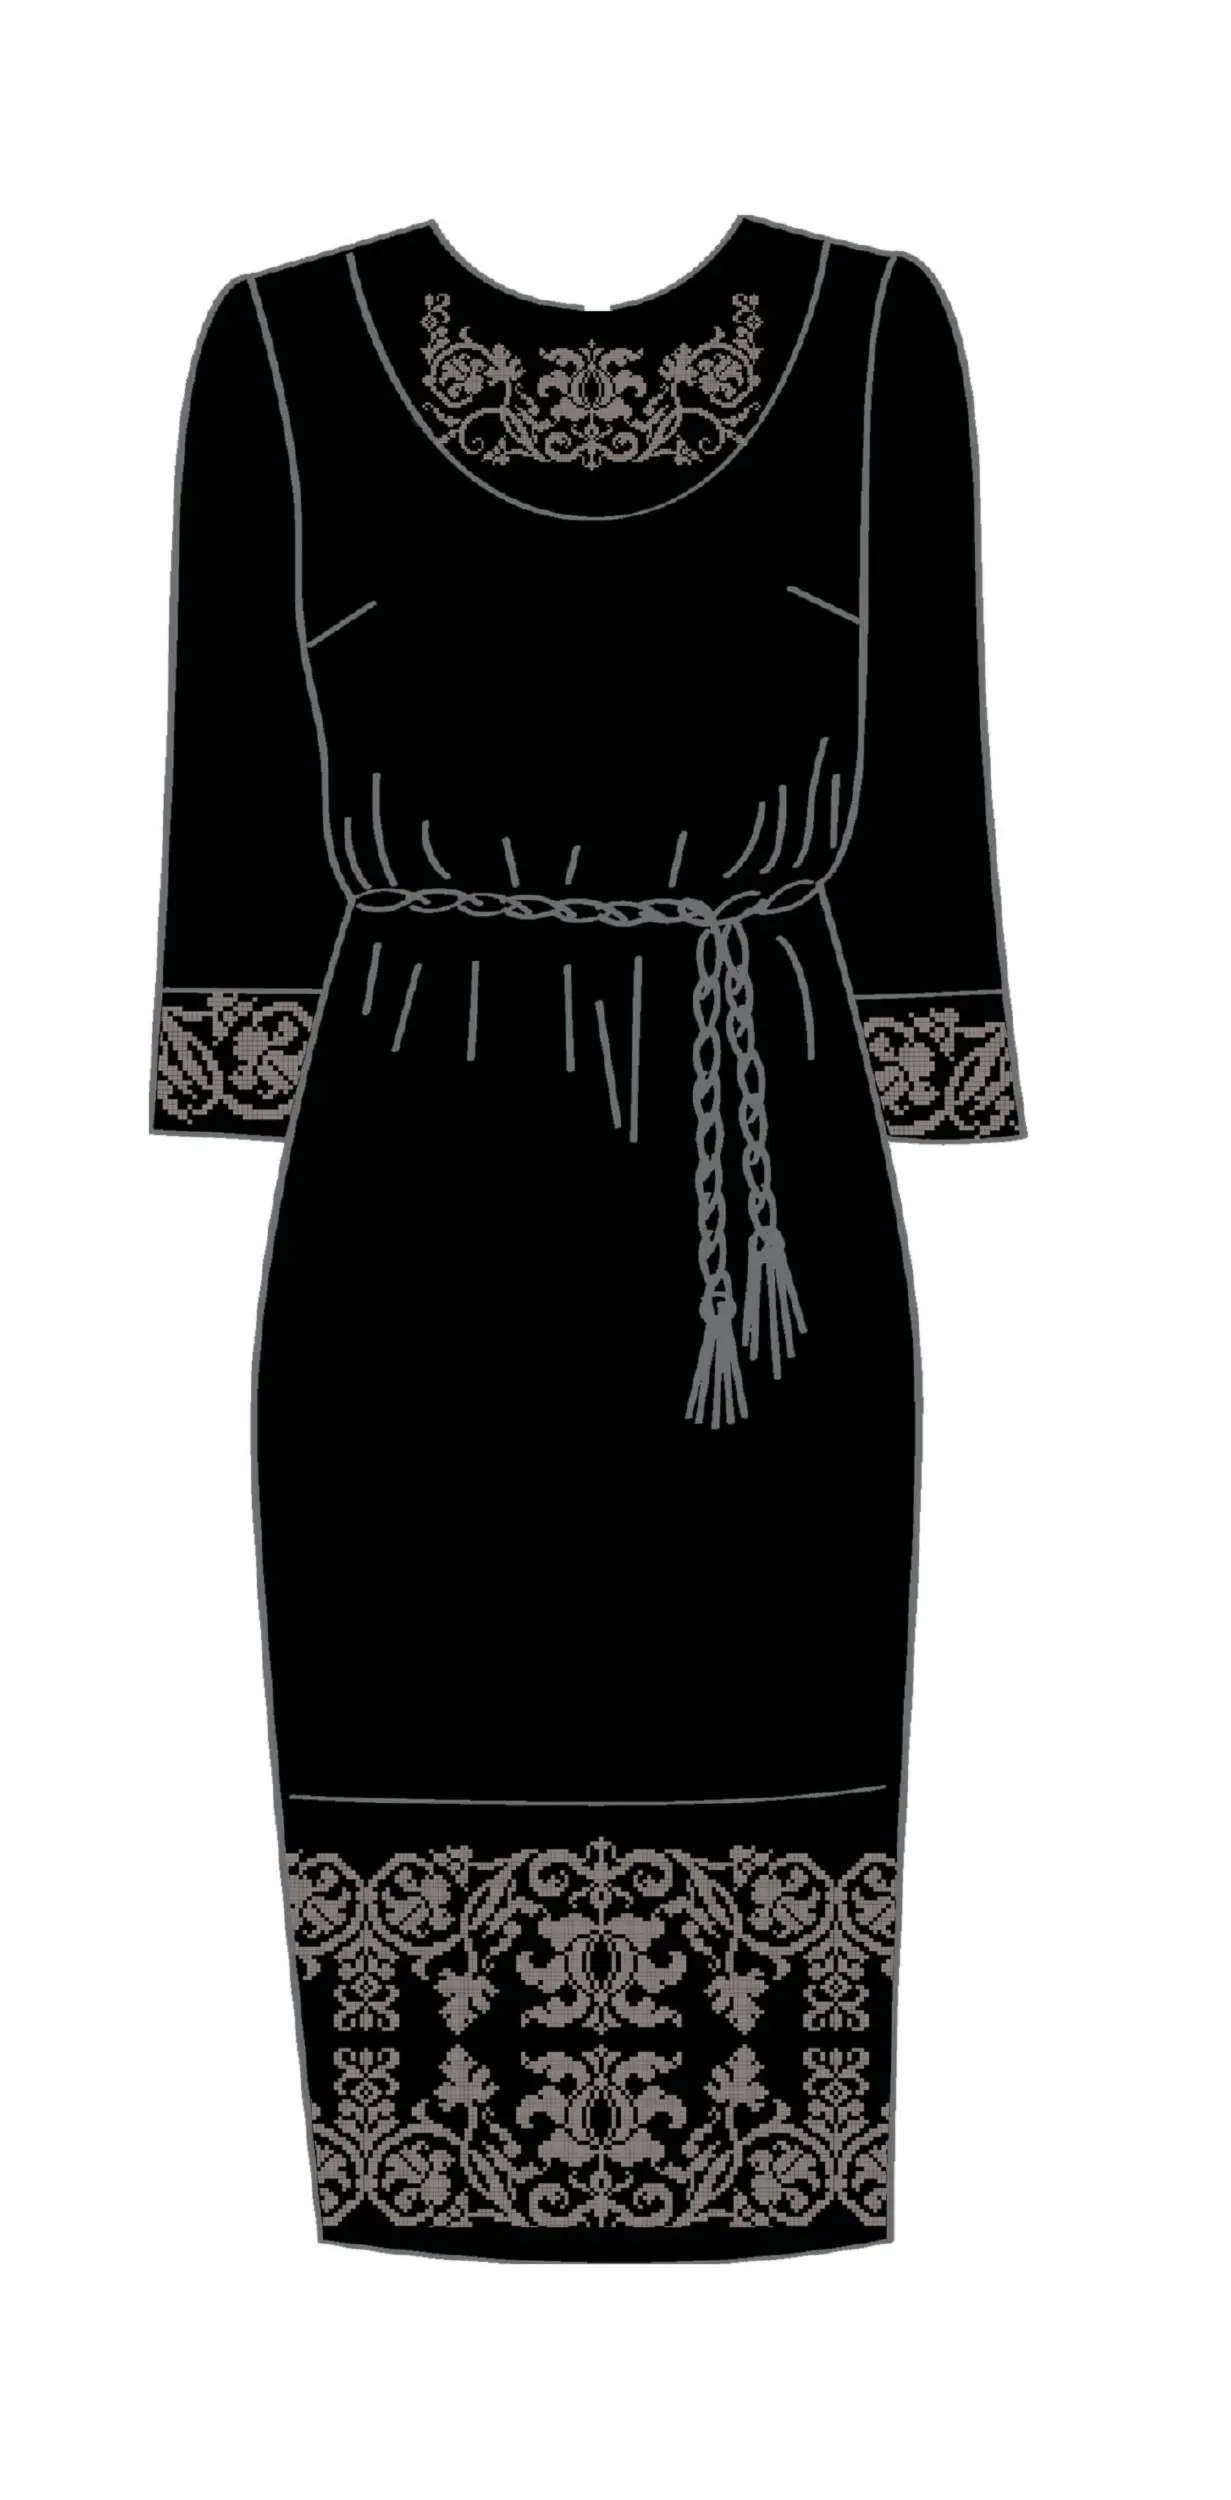 820-14/10 Плаття жіноче з поясом, чорне, розмір 52